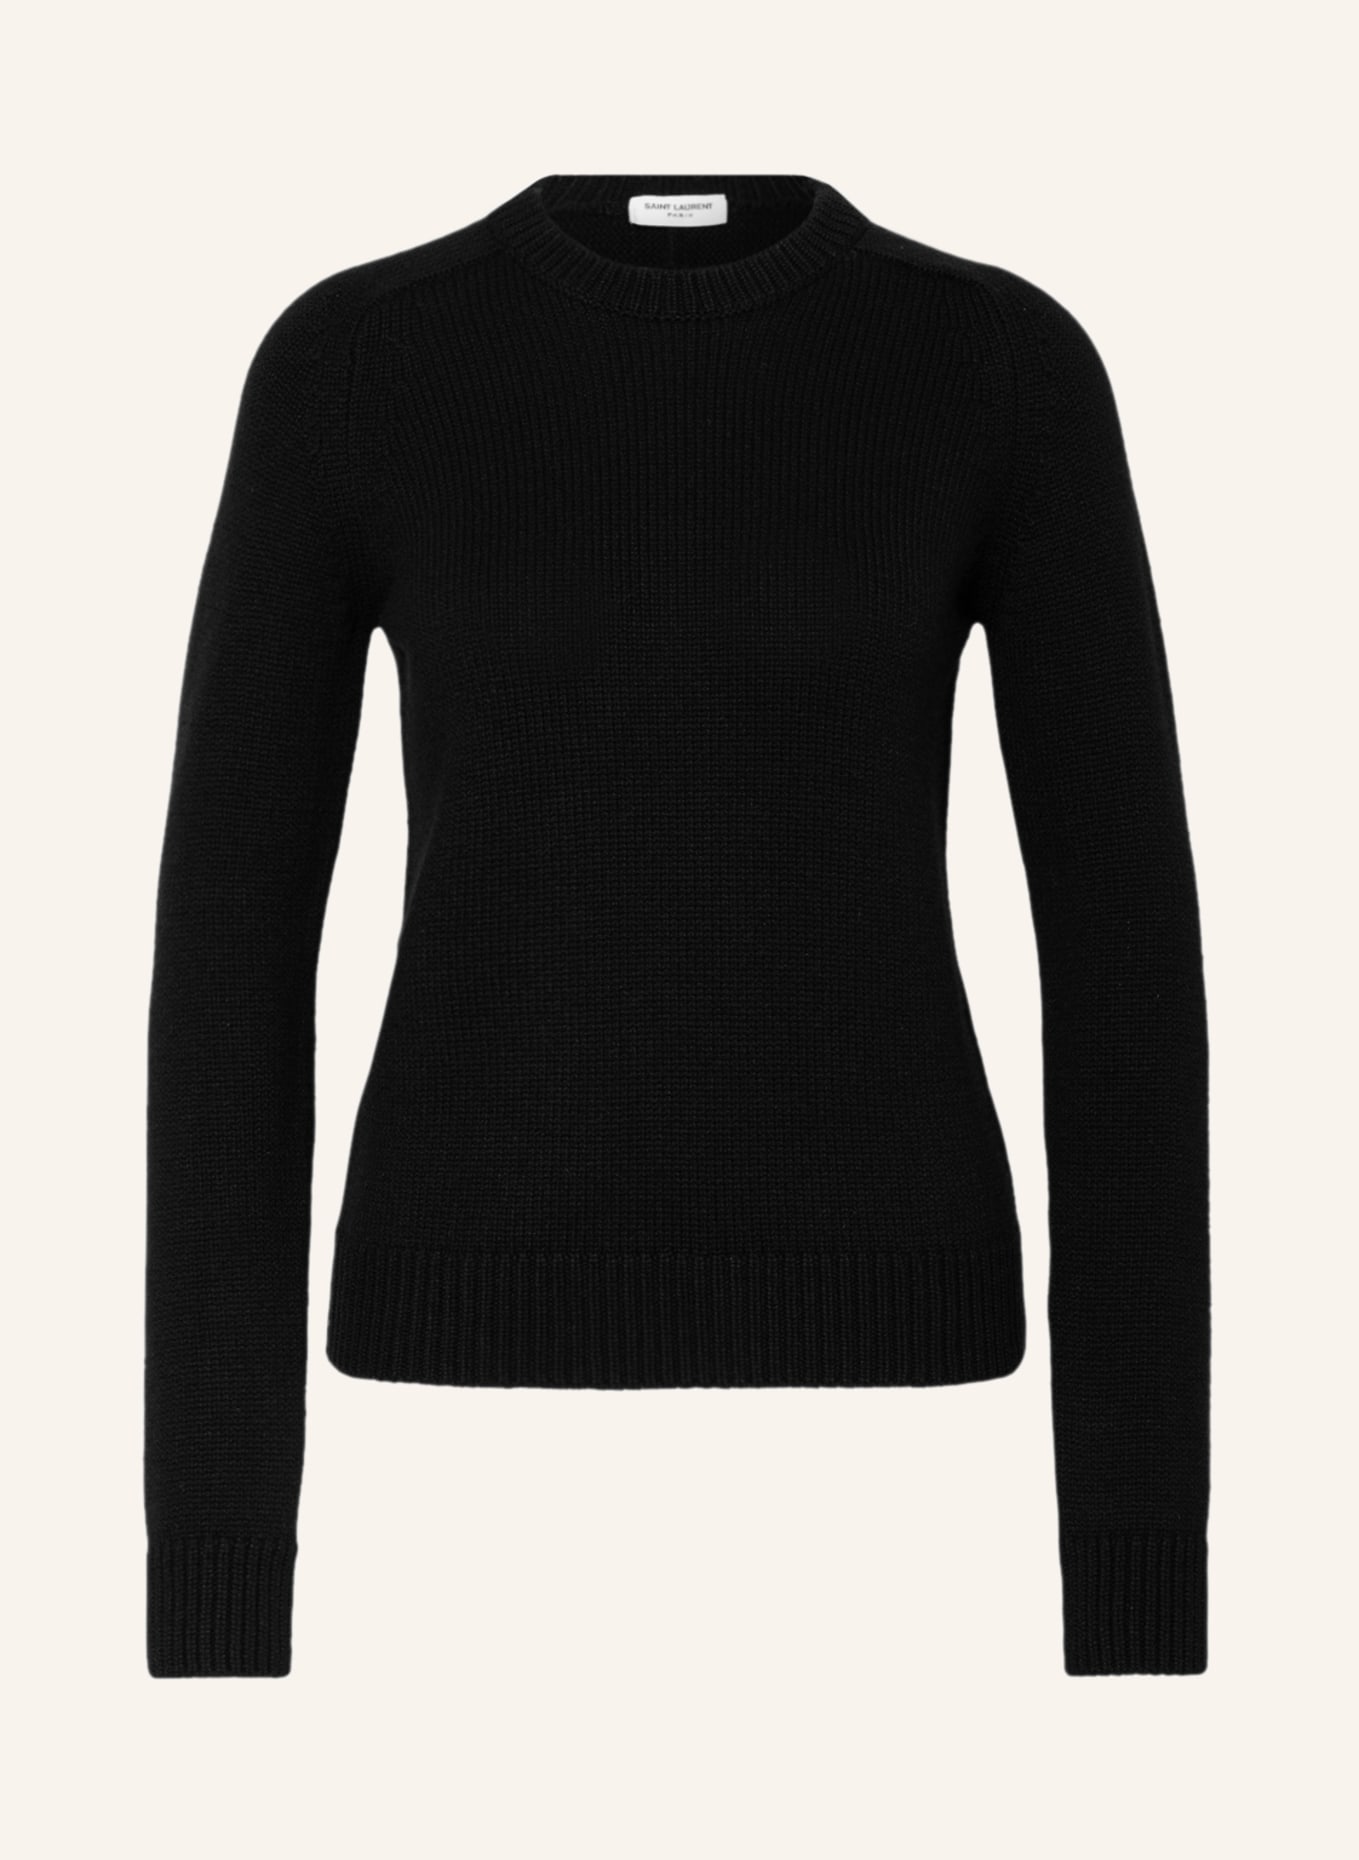 SAINT LAURENT Cashmere-Pullover, Farbe: SCHWARZ (Bild 1)